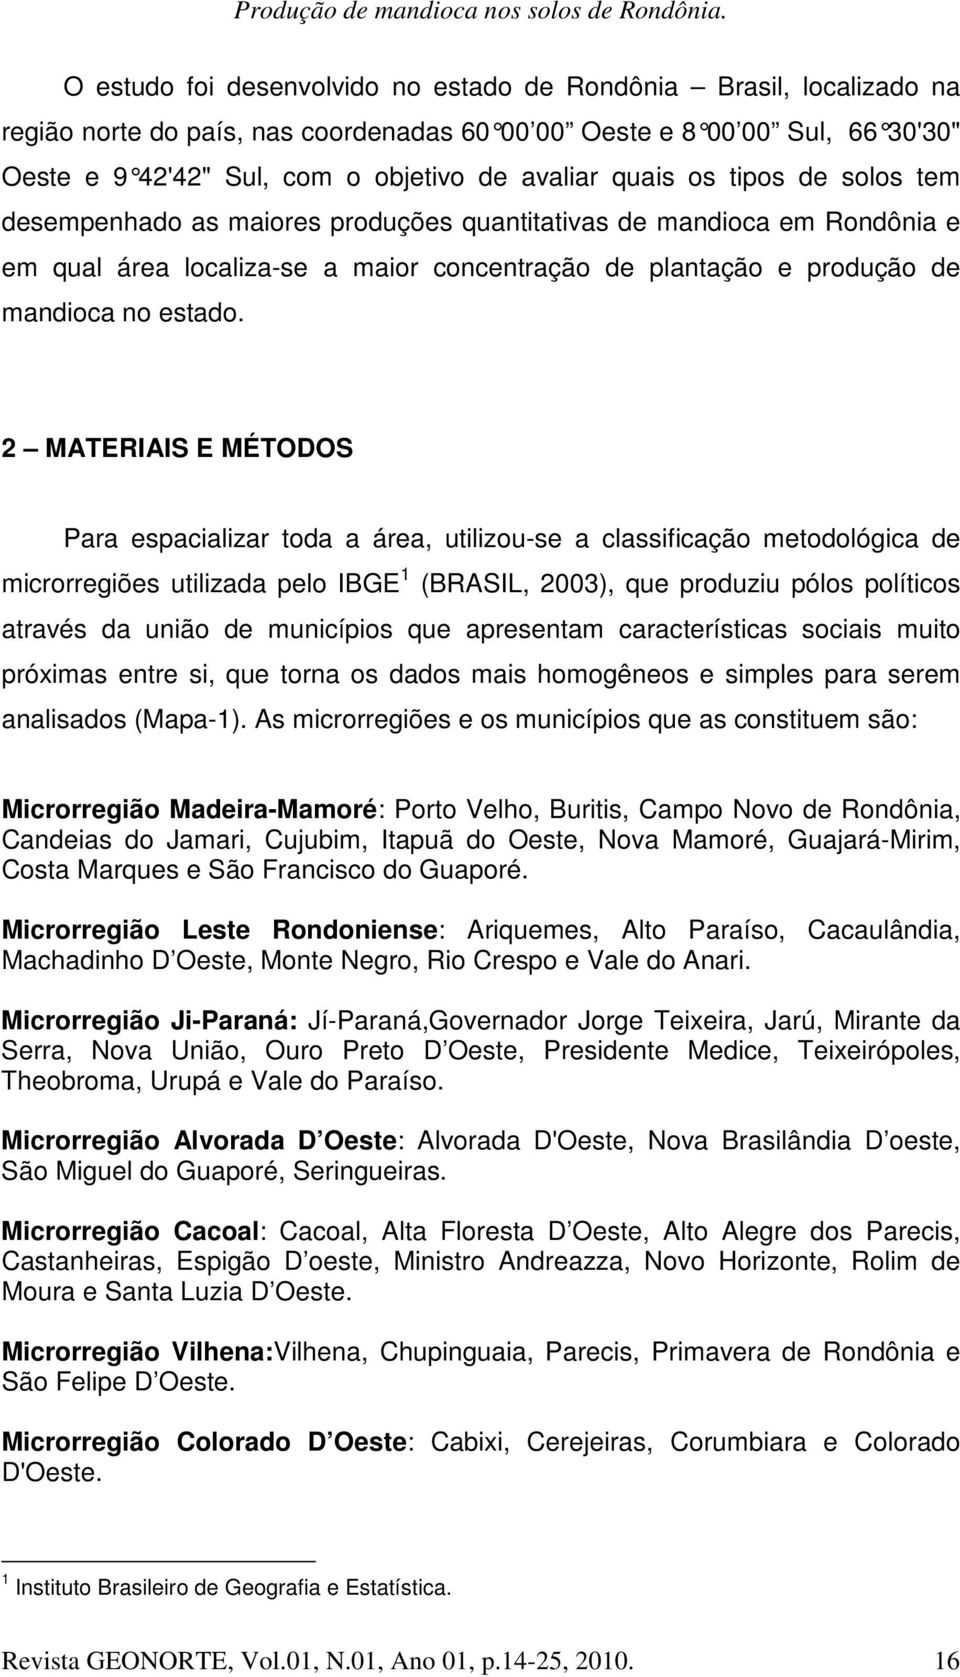 2 MATERIAIS E MÉTODOS Para espacializar toda a área, utilizou-se a classificação metodológica de microrregiões utilizada pelo IBGE 1 (BRASIL, 2003), que produziu pólos políticos através da união de